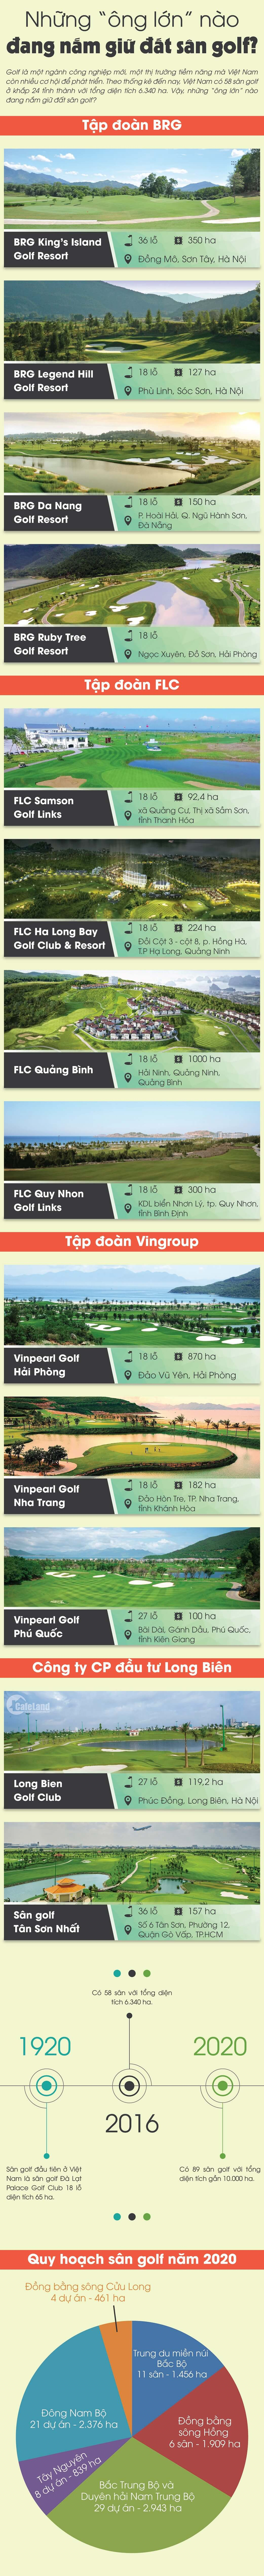 Infographic: Những “ông lớn” nào đang nắm giữ đất sân golf?